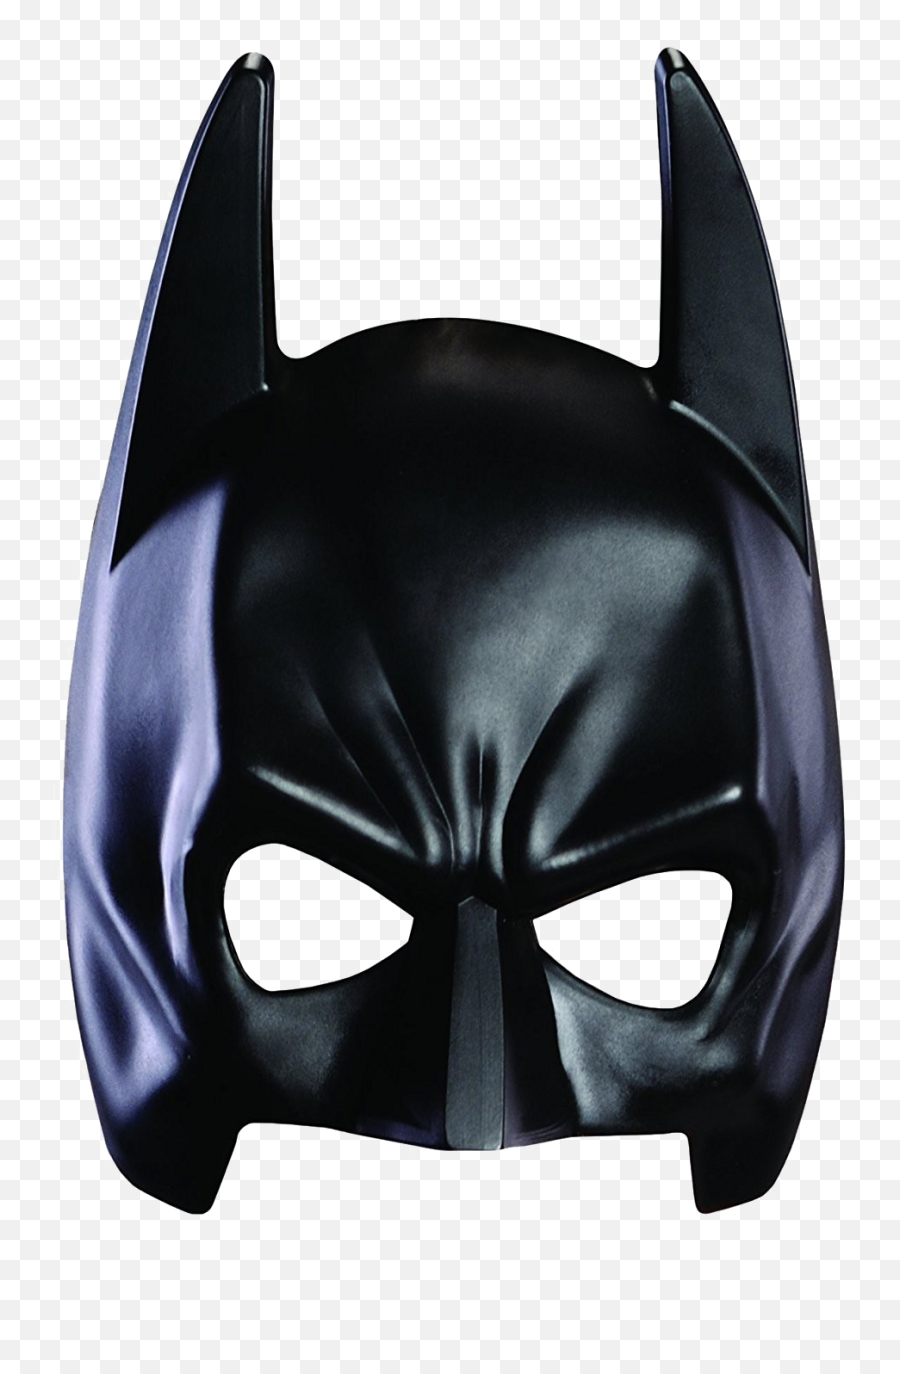 Batman Mask Png Hd - Batman Mask,Batman Mask Png